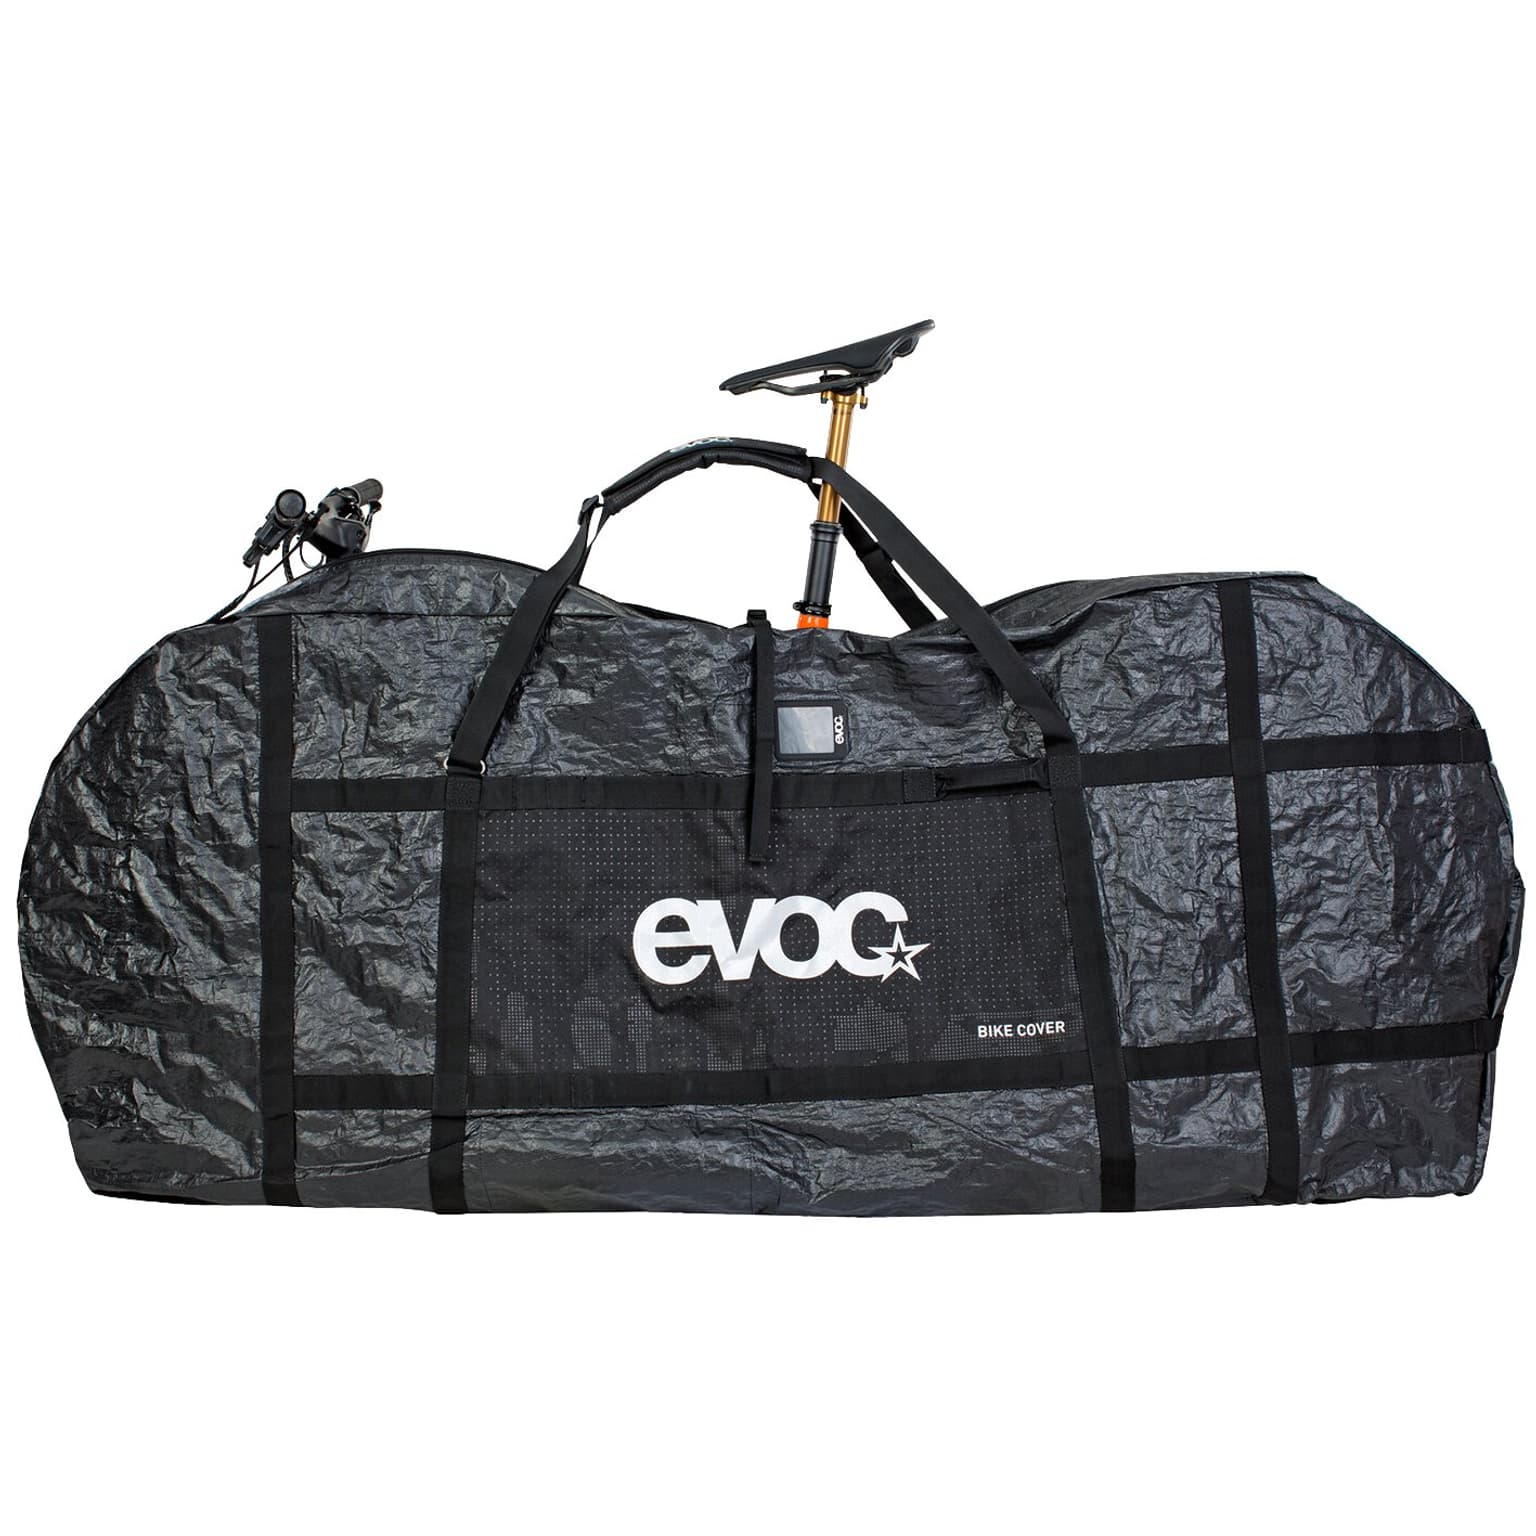 Evoc Evoc Bike Cover Borsa da trasporto 2